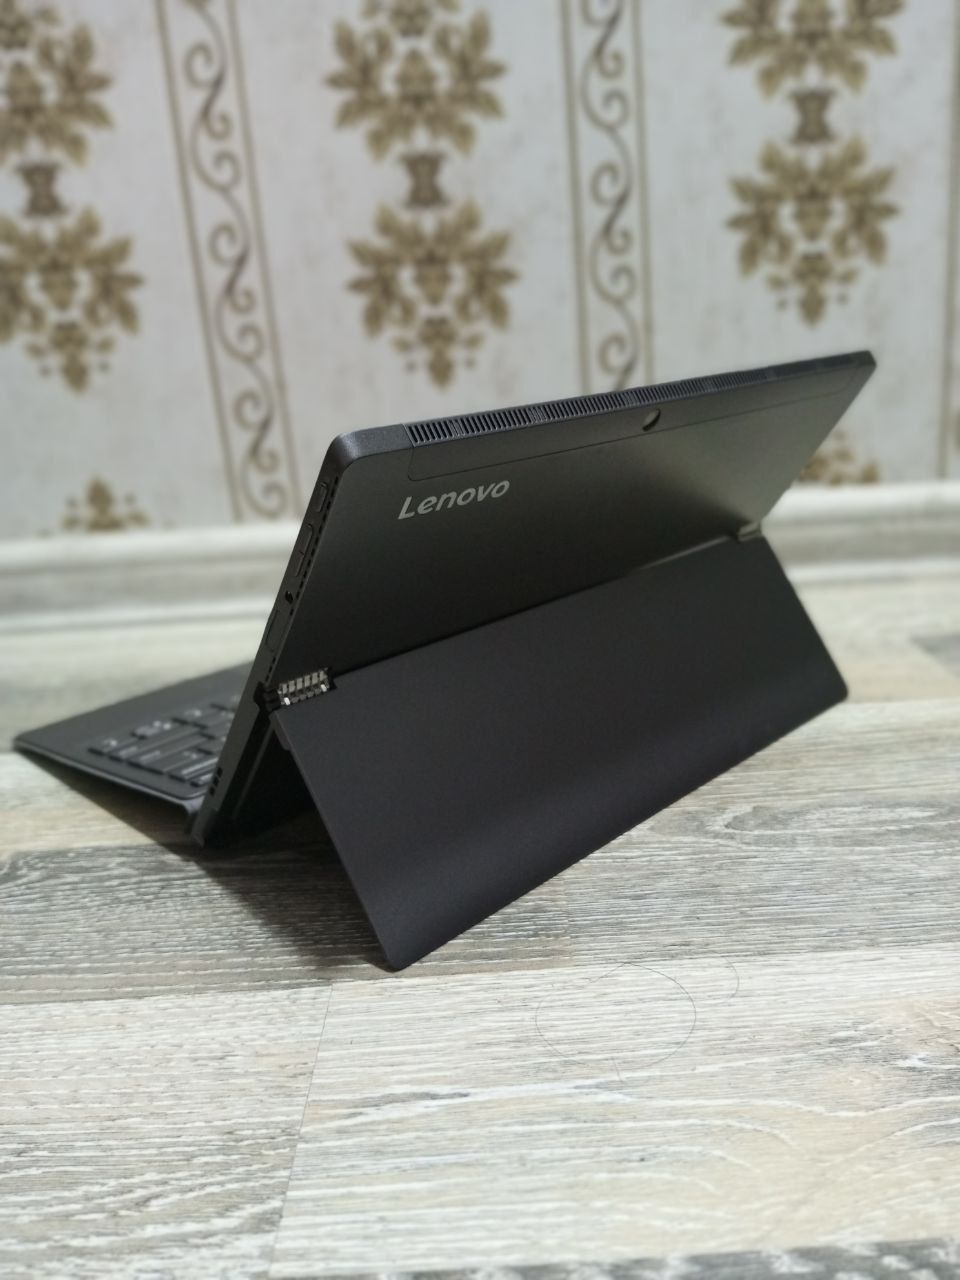 Lenovo i5 8-avlod noutbook hamda planshet